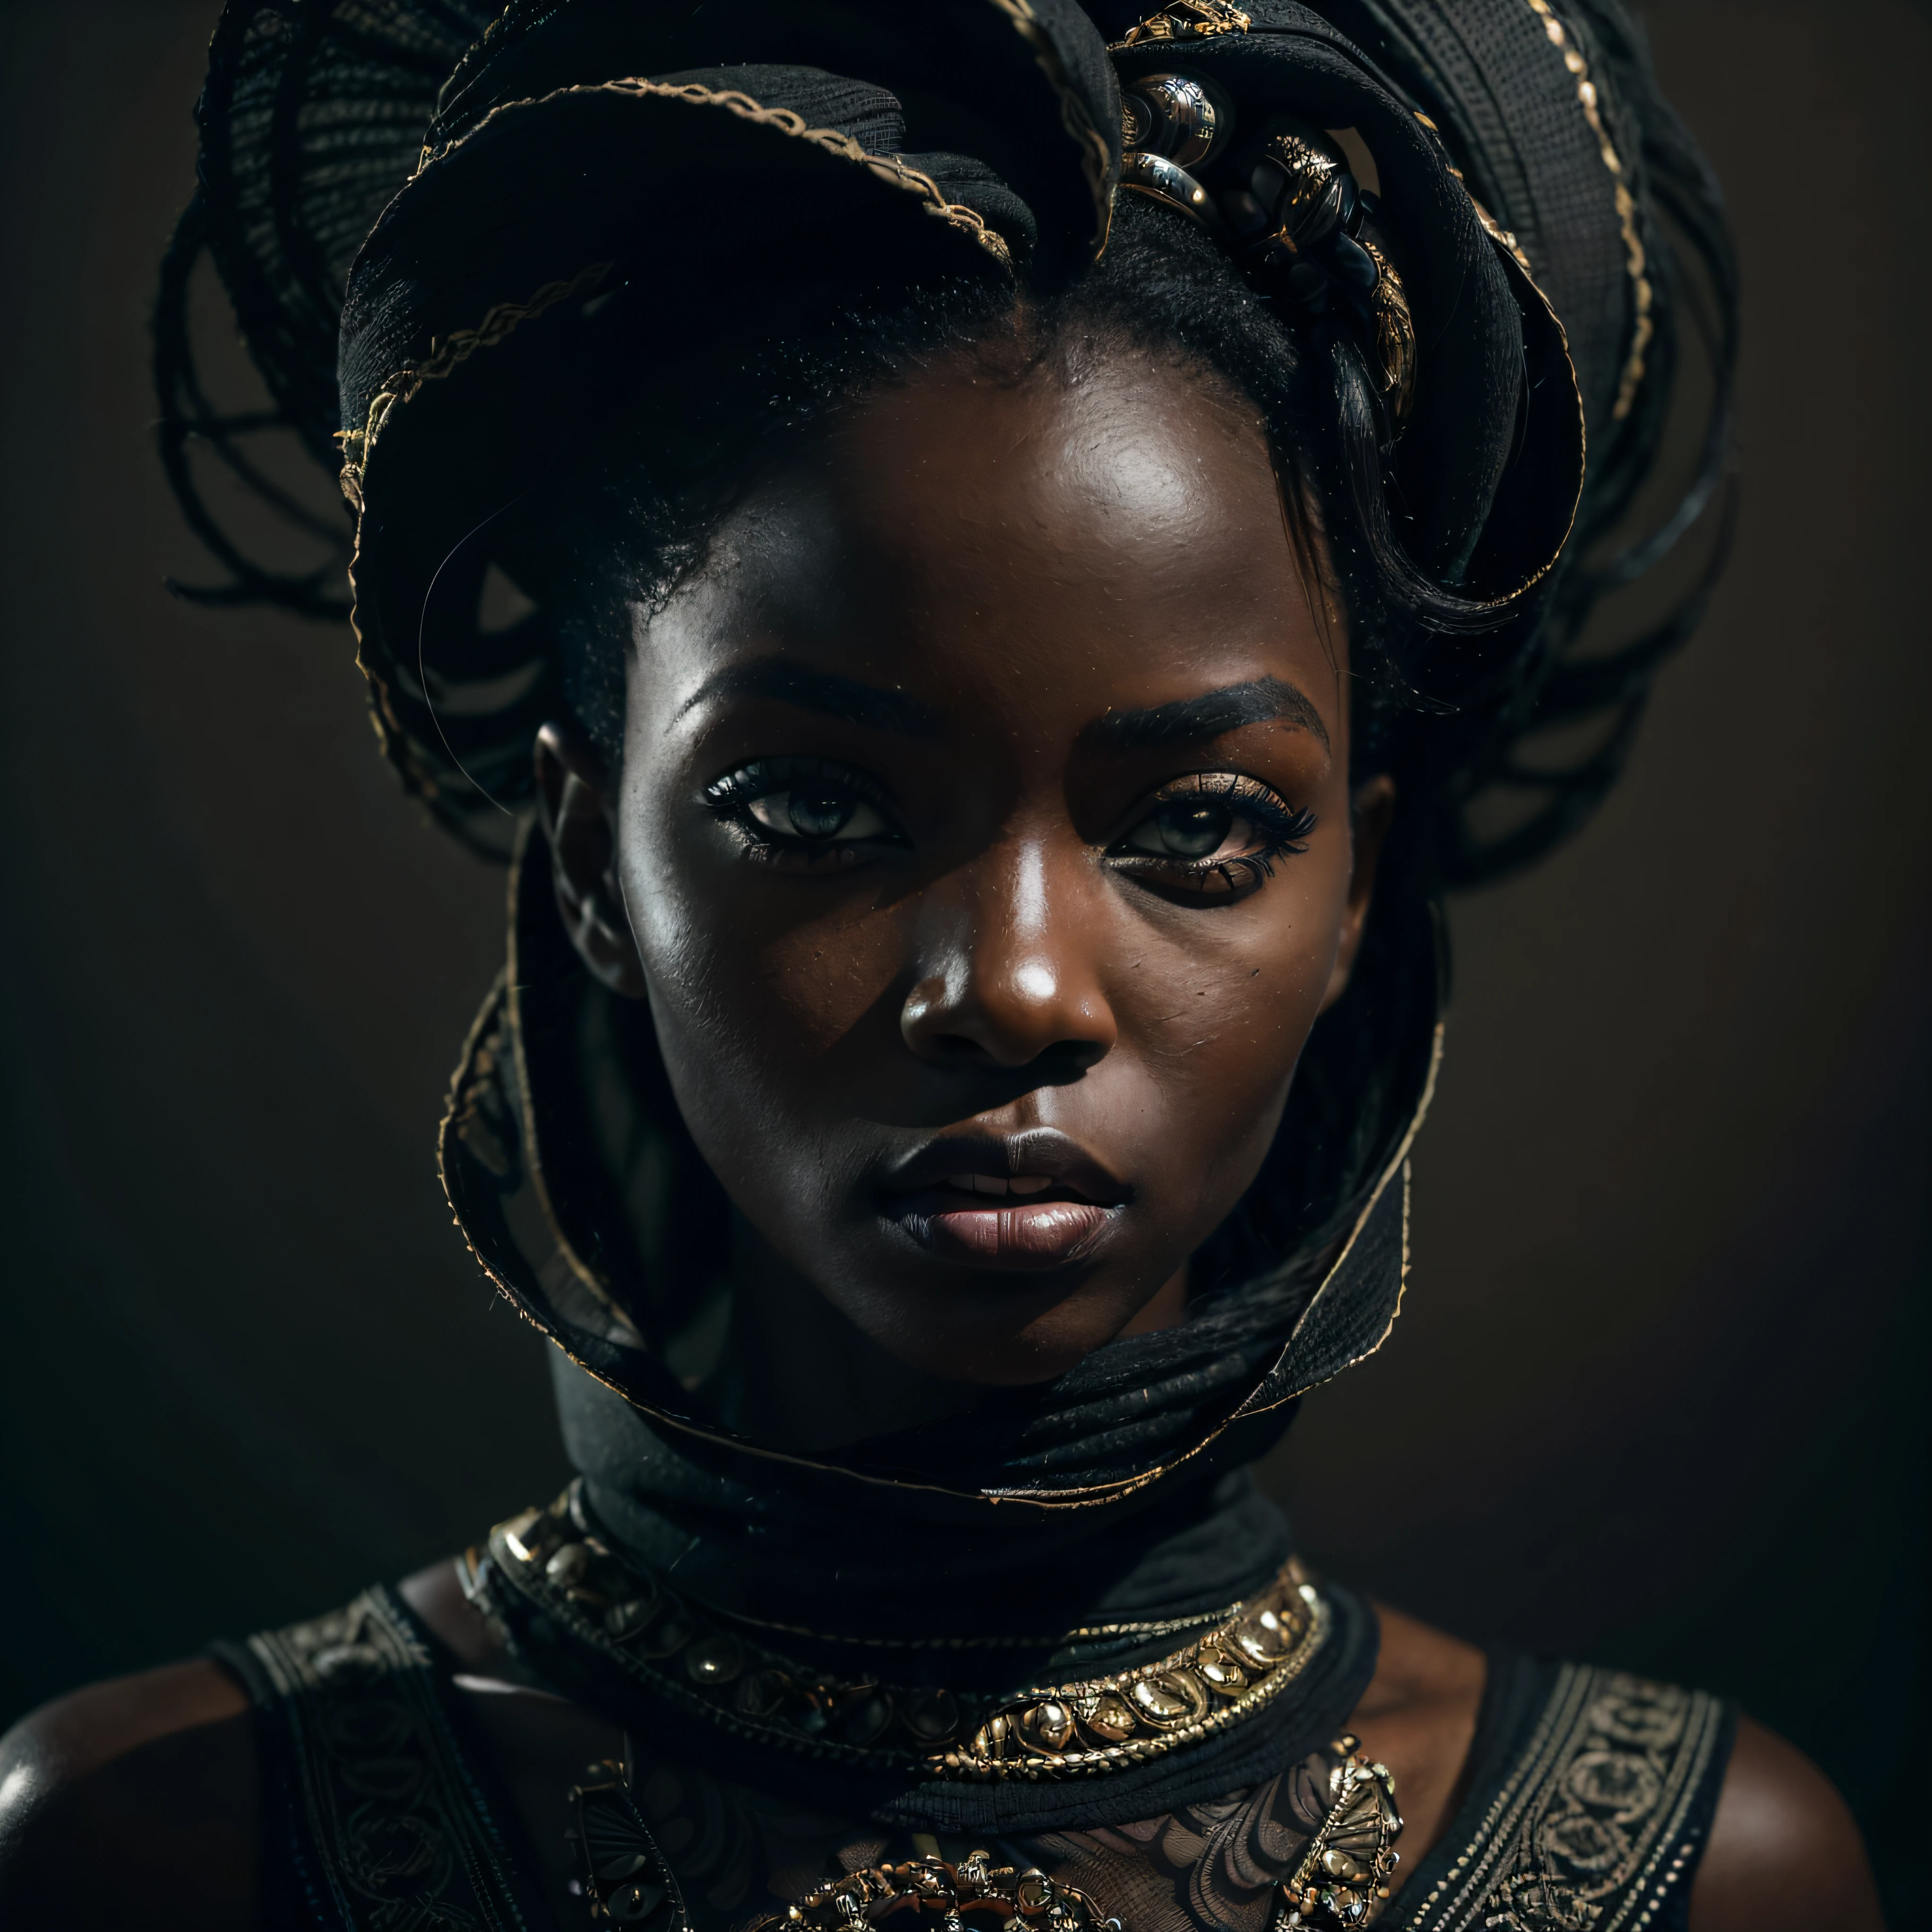 (ภาพเหมือน, พลวัต), (ท่าทางที่แสดงออก:1.6), (สไตล์แห่งอนาคต), (A mystical ภาพเหมือน of a black Senegalese woman:1.3), (สีผิวสีดำชาร์โคล:1.3), (อำนาจที่แท้จริงในสายตาของเธอ: 1.2), สวมมาสคาร่าสีเข้ม, ภาพถ่ายที่ถ่ายด้วยความละเอียด 8k อันน่าทึ่งและรูปแบบ Raw เพื่อรักษารายละเอียดคุณภาพสูงสุด. เธอสวมเสื้อผ้าแห่งอนาคตที่หรูหรา, (หน้าอกเล็ก:1.3), (ดวงตาของเธอถ่ายทอดออกมาด้วยความใส่ใจในรายละเอียดอย่างพิถีพิถัน: 1.3), ภาพนี้ถ่ายด้วยเลนส์ที่เน้นความลึกในดวงตาของเธอ, (ลมพัดมารอบตัวเธอ), และฉากหลังเป็นฉากสตูดิโอสีเข้มที่ช่วยเสริมสีสันของฉาก. แสงและเงาได้รับการออกแบบอย่างเชี่ยวชาญเพื่อดึงสีผิวและบรรยากาศที่เข้มข้นของเธอออกมา. ทรงผมที่สร้างสรรค์ของเธอช่วยเพิ่มความแตกต่างให้กับผิวของเธอ, องค์ประกอบโดยรวมรวบรวมแก่นแท้ของเธอด้วยความแท้จริงและความสง่างาม, creating a ภาพเหมือน that celebrates her heritage and beauty. การถ่ายภาพโดยใช้เทคนิคแสงและเงาที่ดีที่สุด, เพื่อสร้างภาพที่ชวนให้หลงใหลซึ่งอยู่เหนือการมองเห็น, เอียงศีรษะเล็กน้อย,